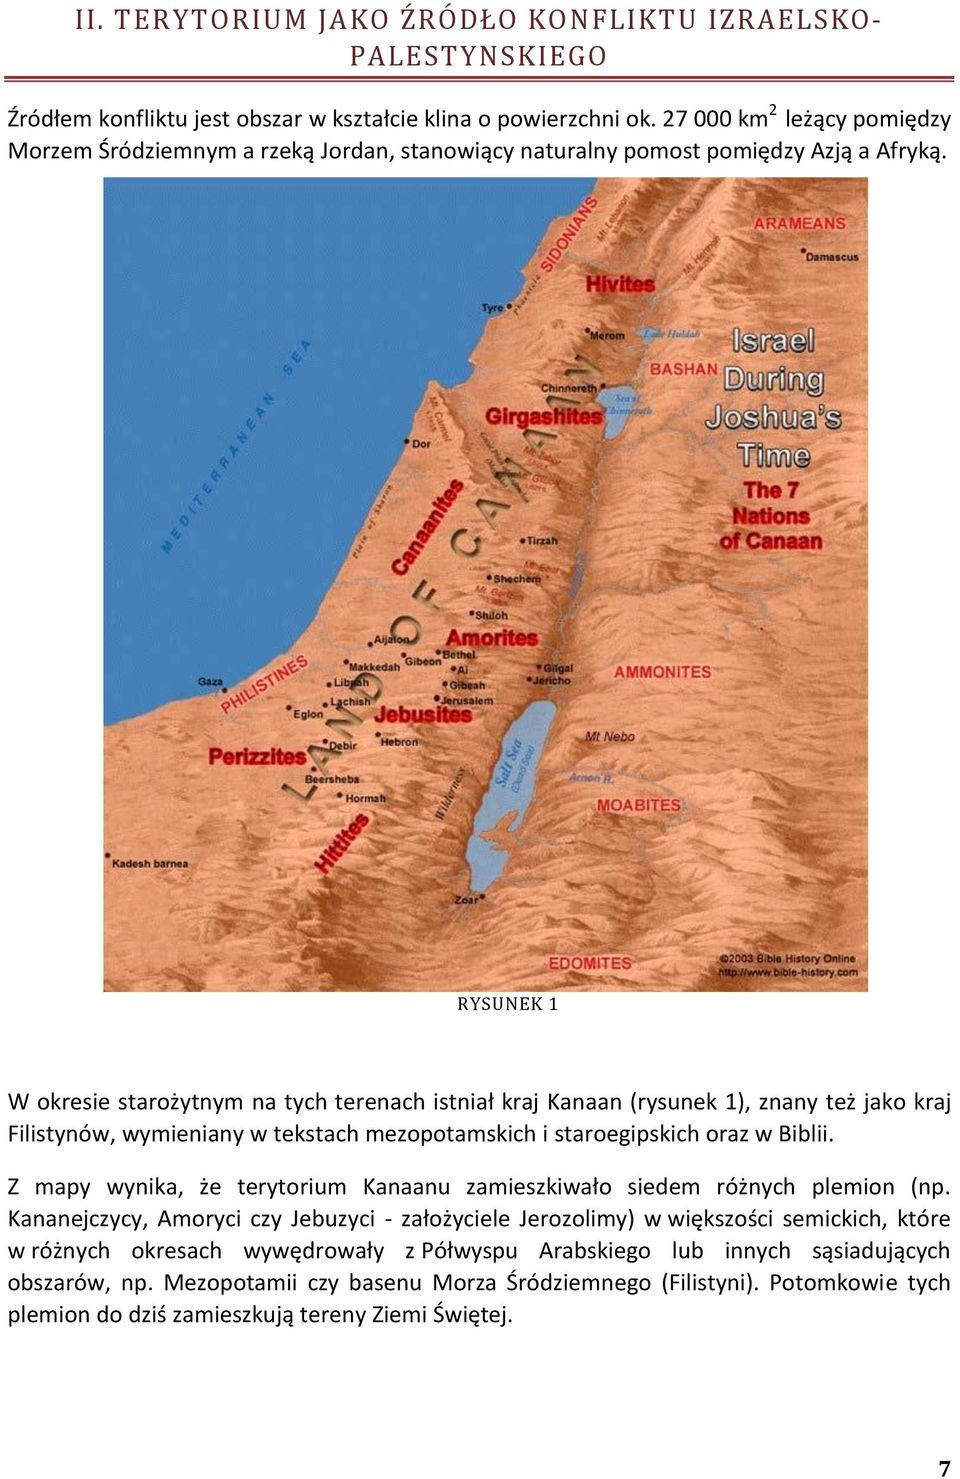 RYSUNEK 1 W okresie starożytnym na tych terenach istniał kraj Kanaan (rysunek 1), znany też jako kraj Filistynów, wymieniany w tekstach mezopotamskich i staroegipskich oraz w Biblii.